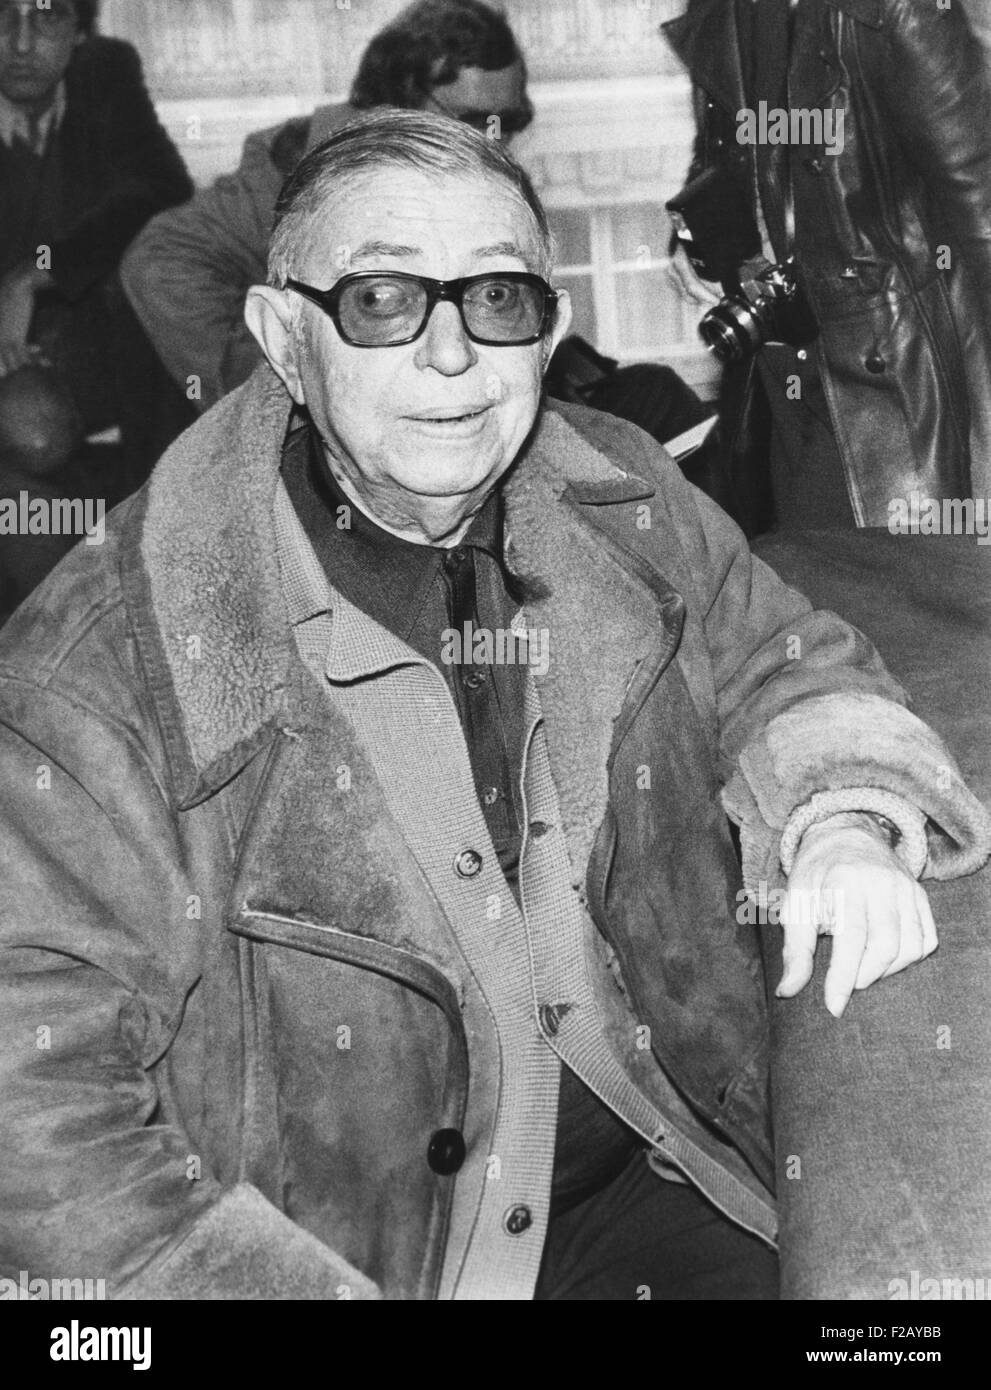 Jean Paul Sartre auf einer Pressekonferenz in Paris am 10. Dezember 1974. Sartre war der erste Nobelpreisträger, freiwillig den Preis im Jahre 1964, abzulehnen, weil "ein Schriftsteller nicht erlauben sich selbst in einer Institution verwandelt werden sollte". Er weigerte sich auch der Ehrenlegion im Jahre 1945. (CSU 2015 9 794) Stockfoto